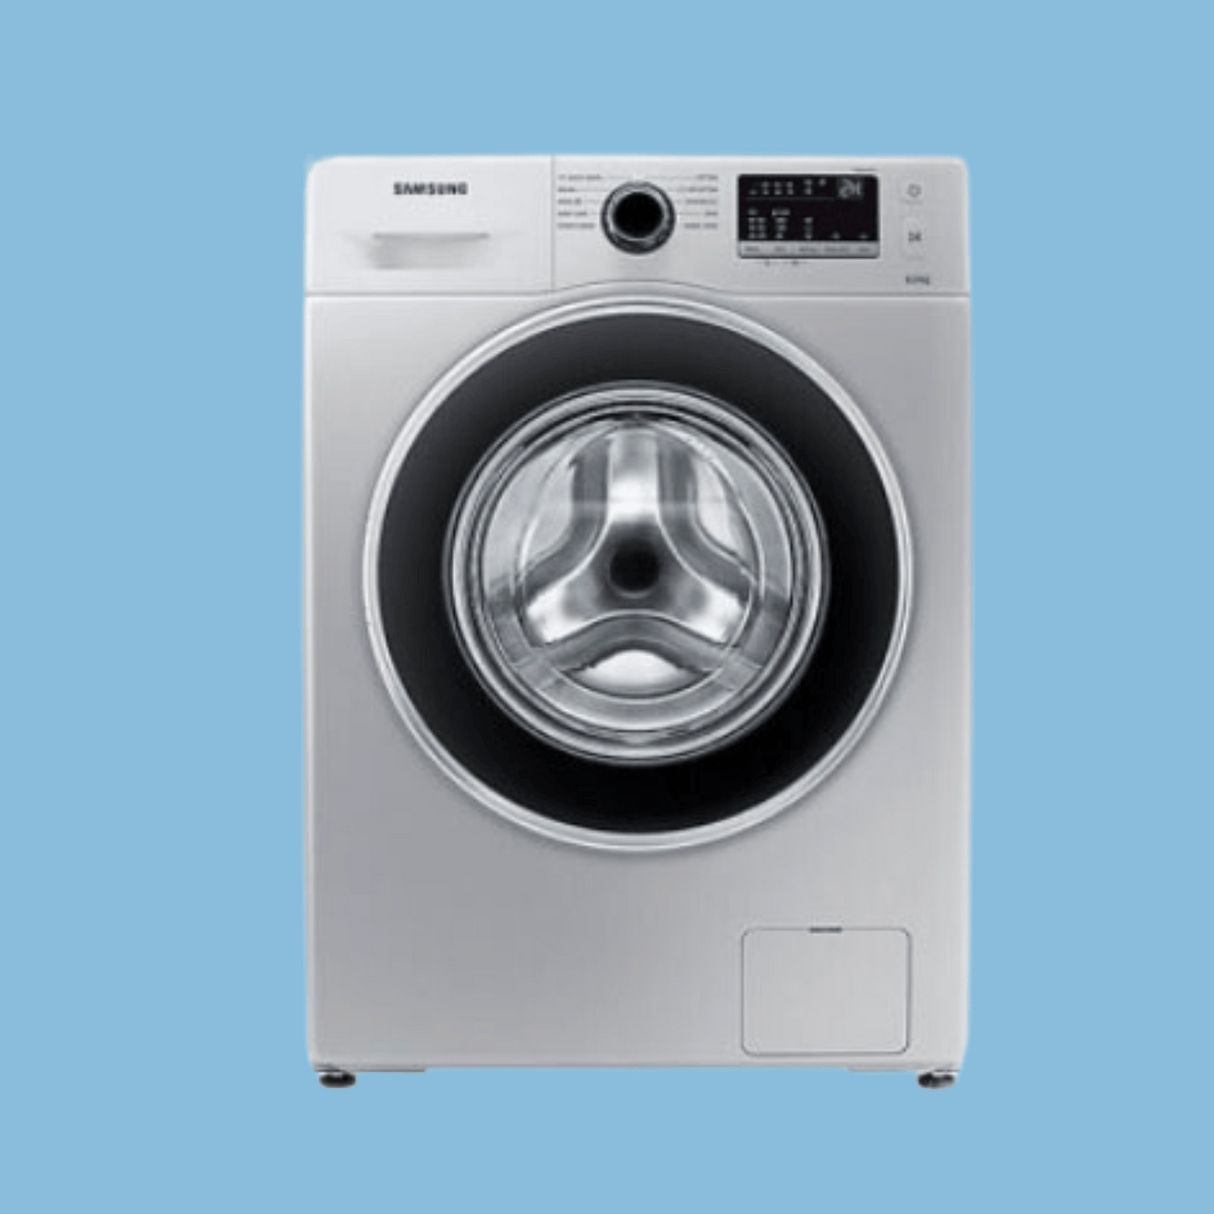 Samsung 7kg Washing Machine Deep Foam, WW70 J4260GS - Silver